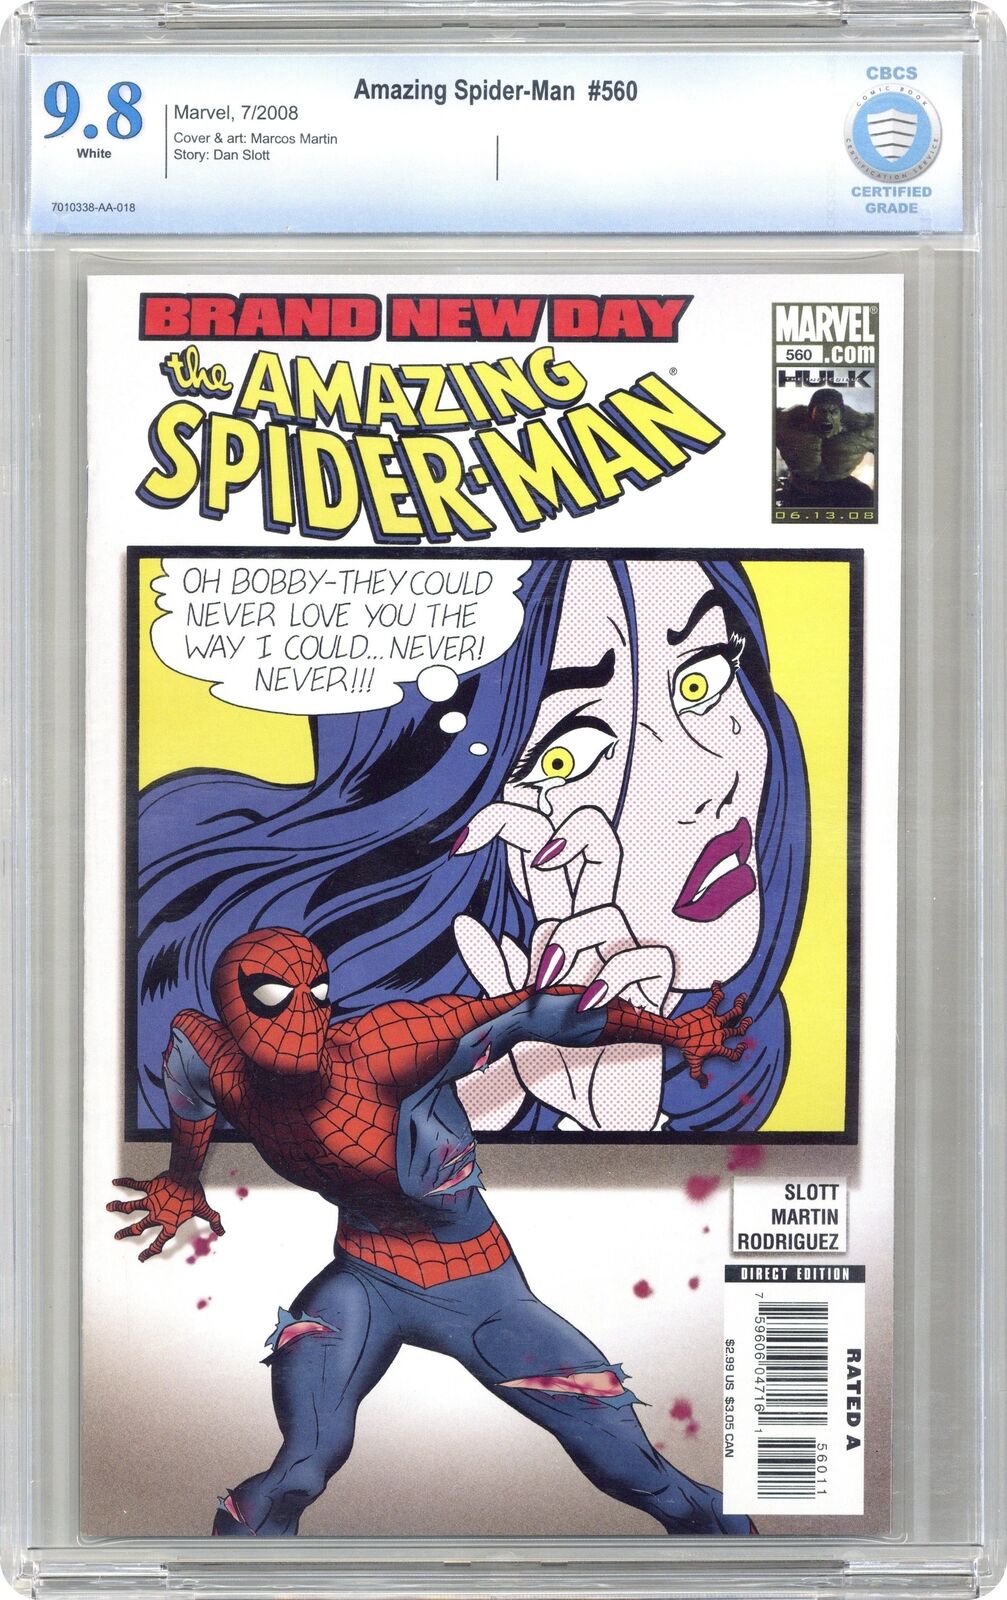 Amazing Spider-Man #560 CBCS 9.8 2008 7010338-AA-018